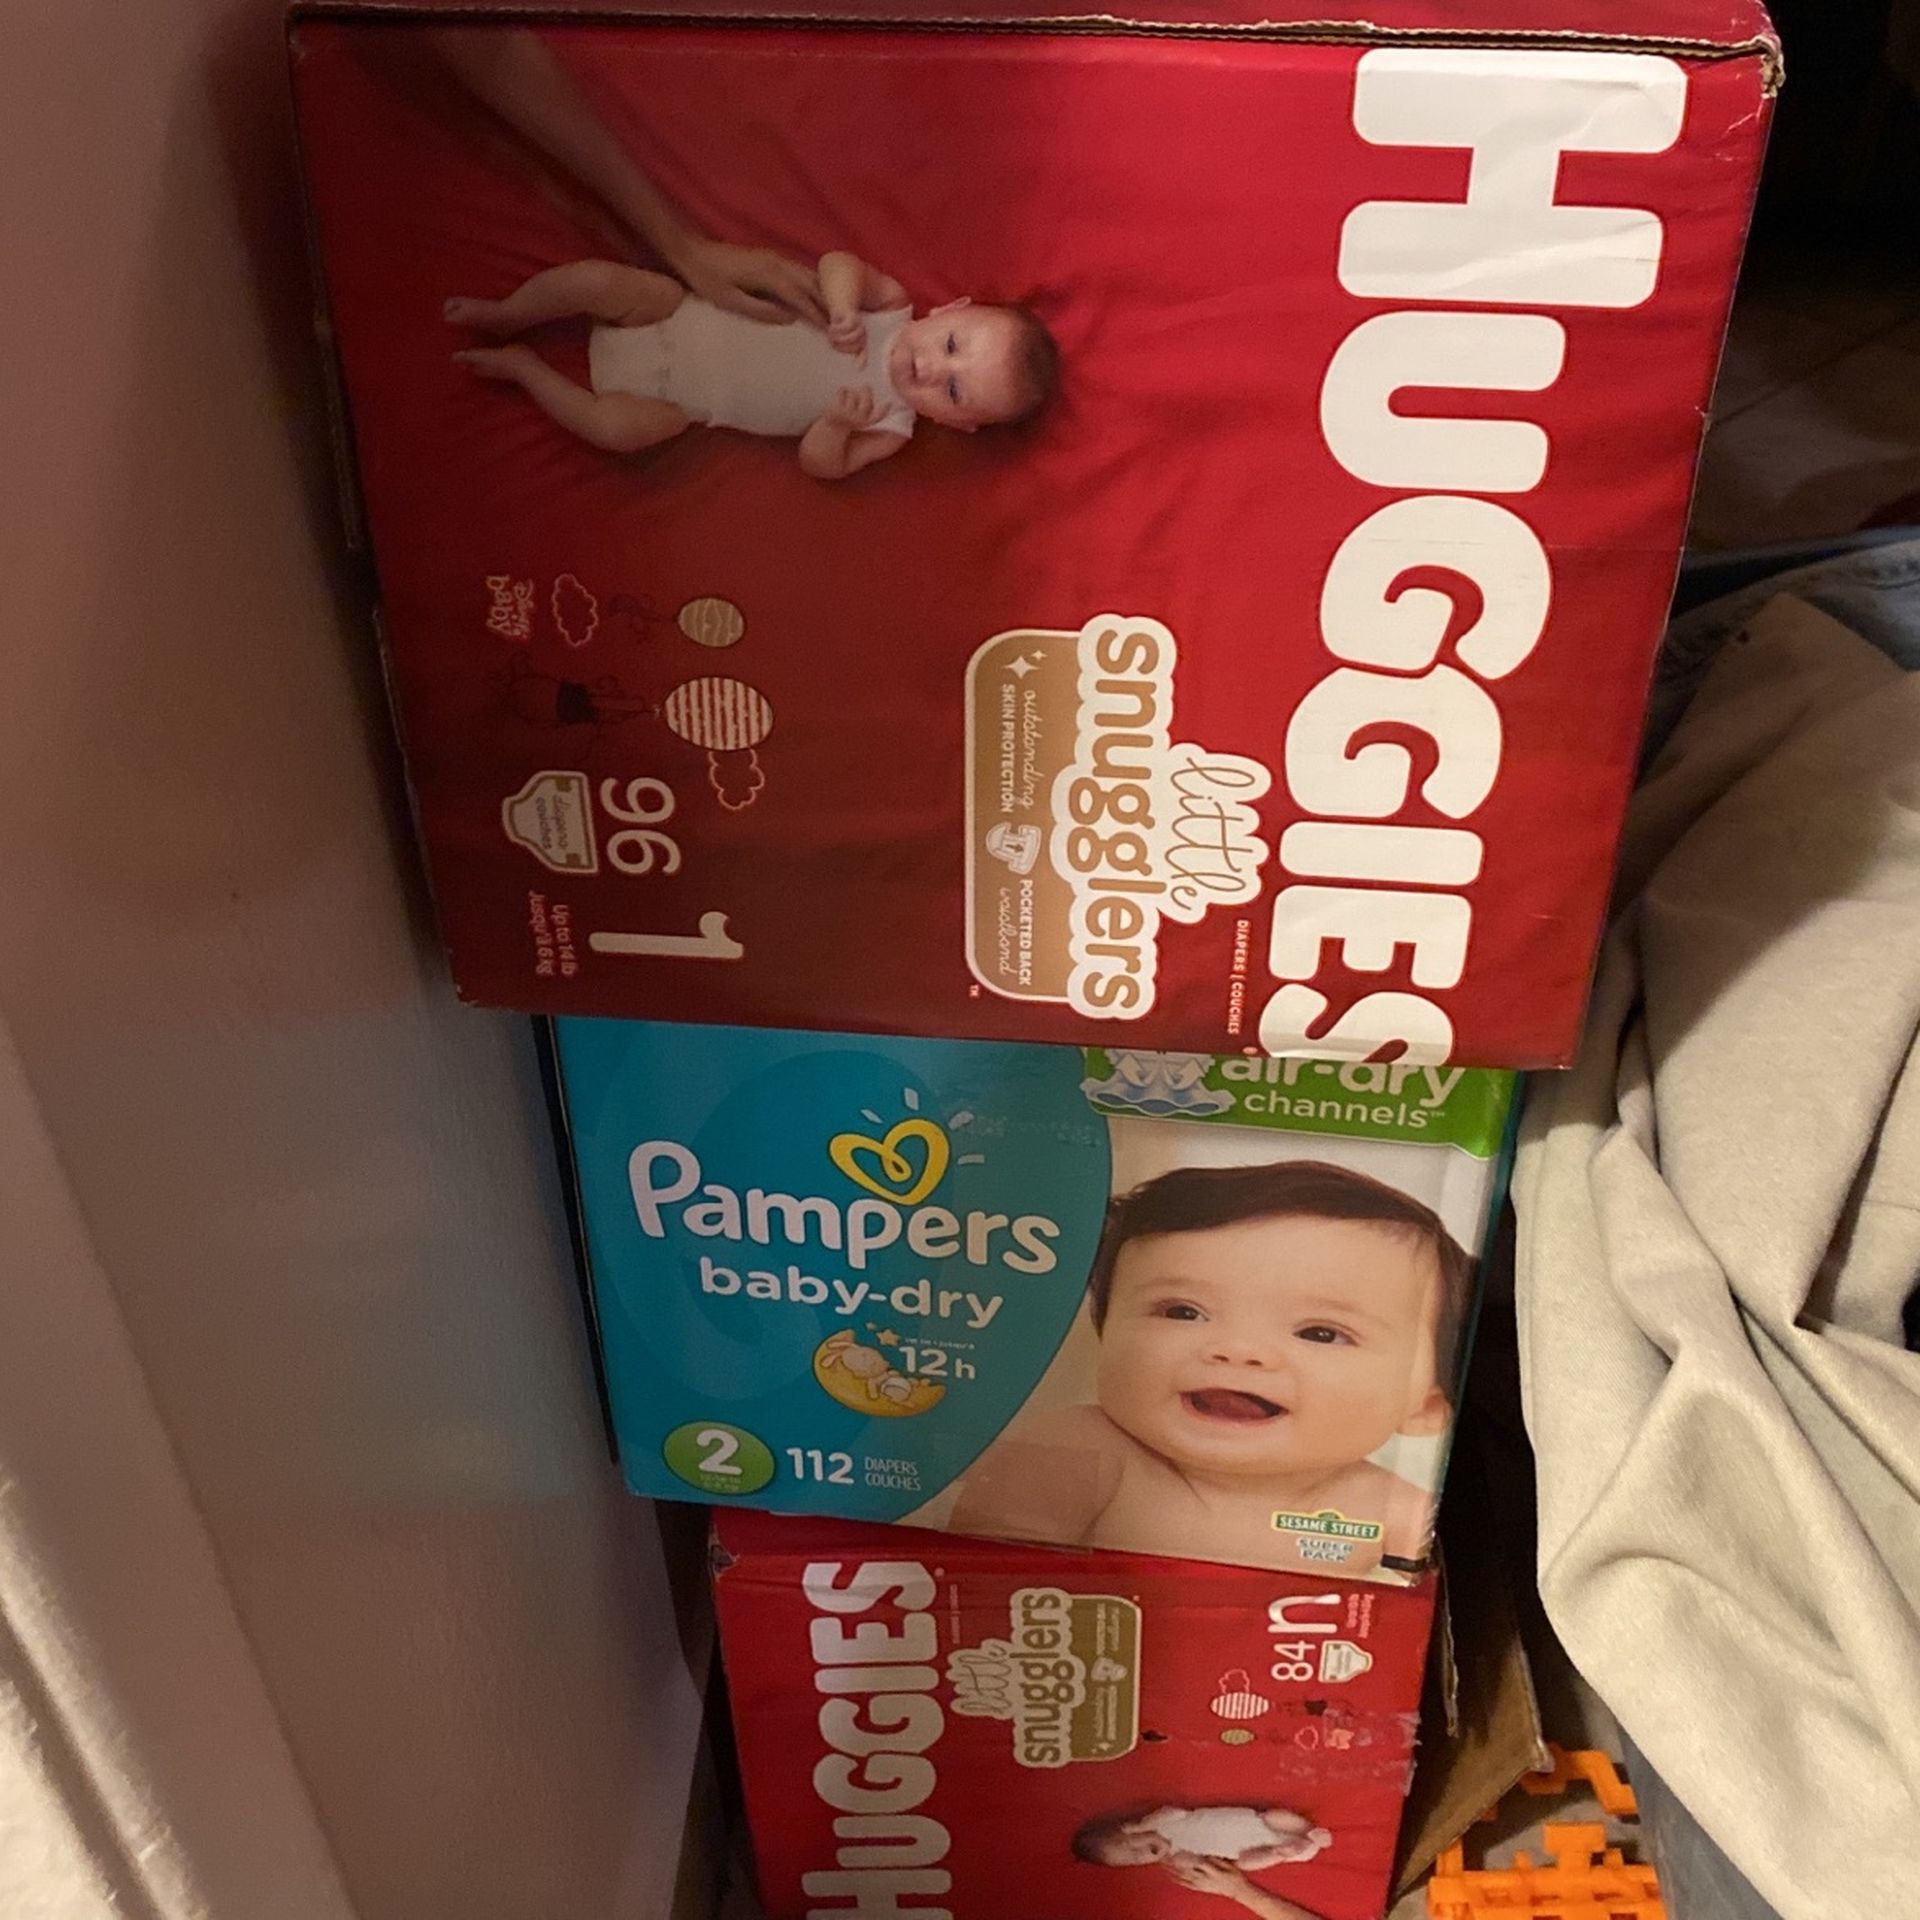 Diaper bundle